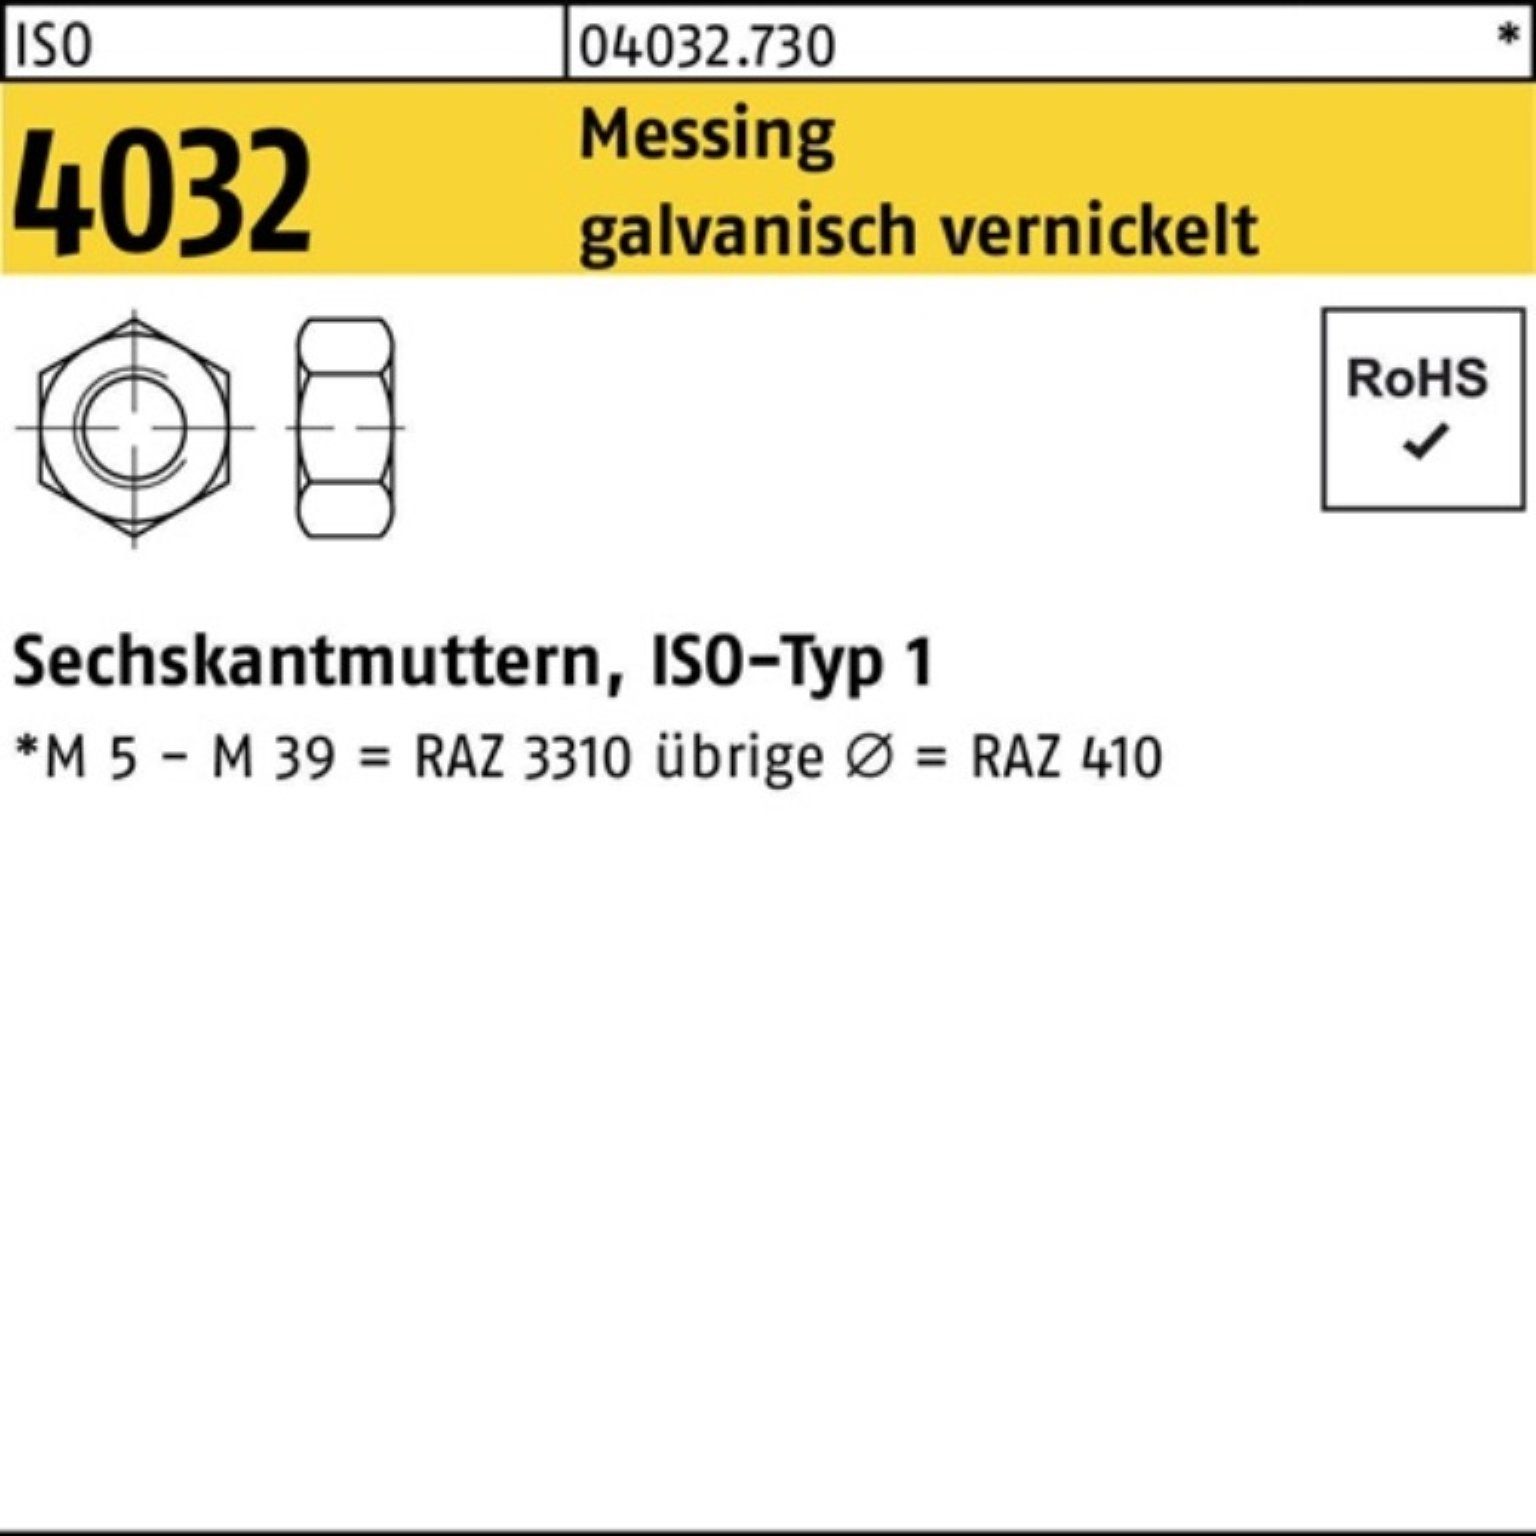 Bufab Muttern 100er Pack Sechskantmutter 4032 galv. S M12 vernickelt 100 Messing ISO